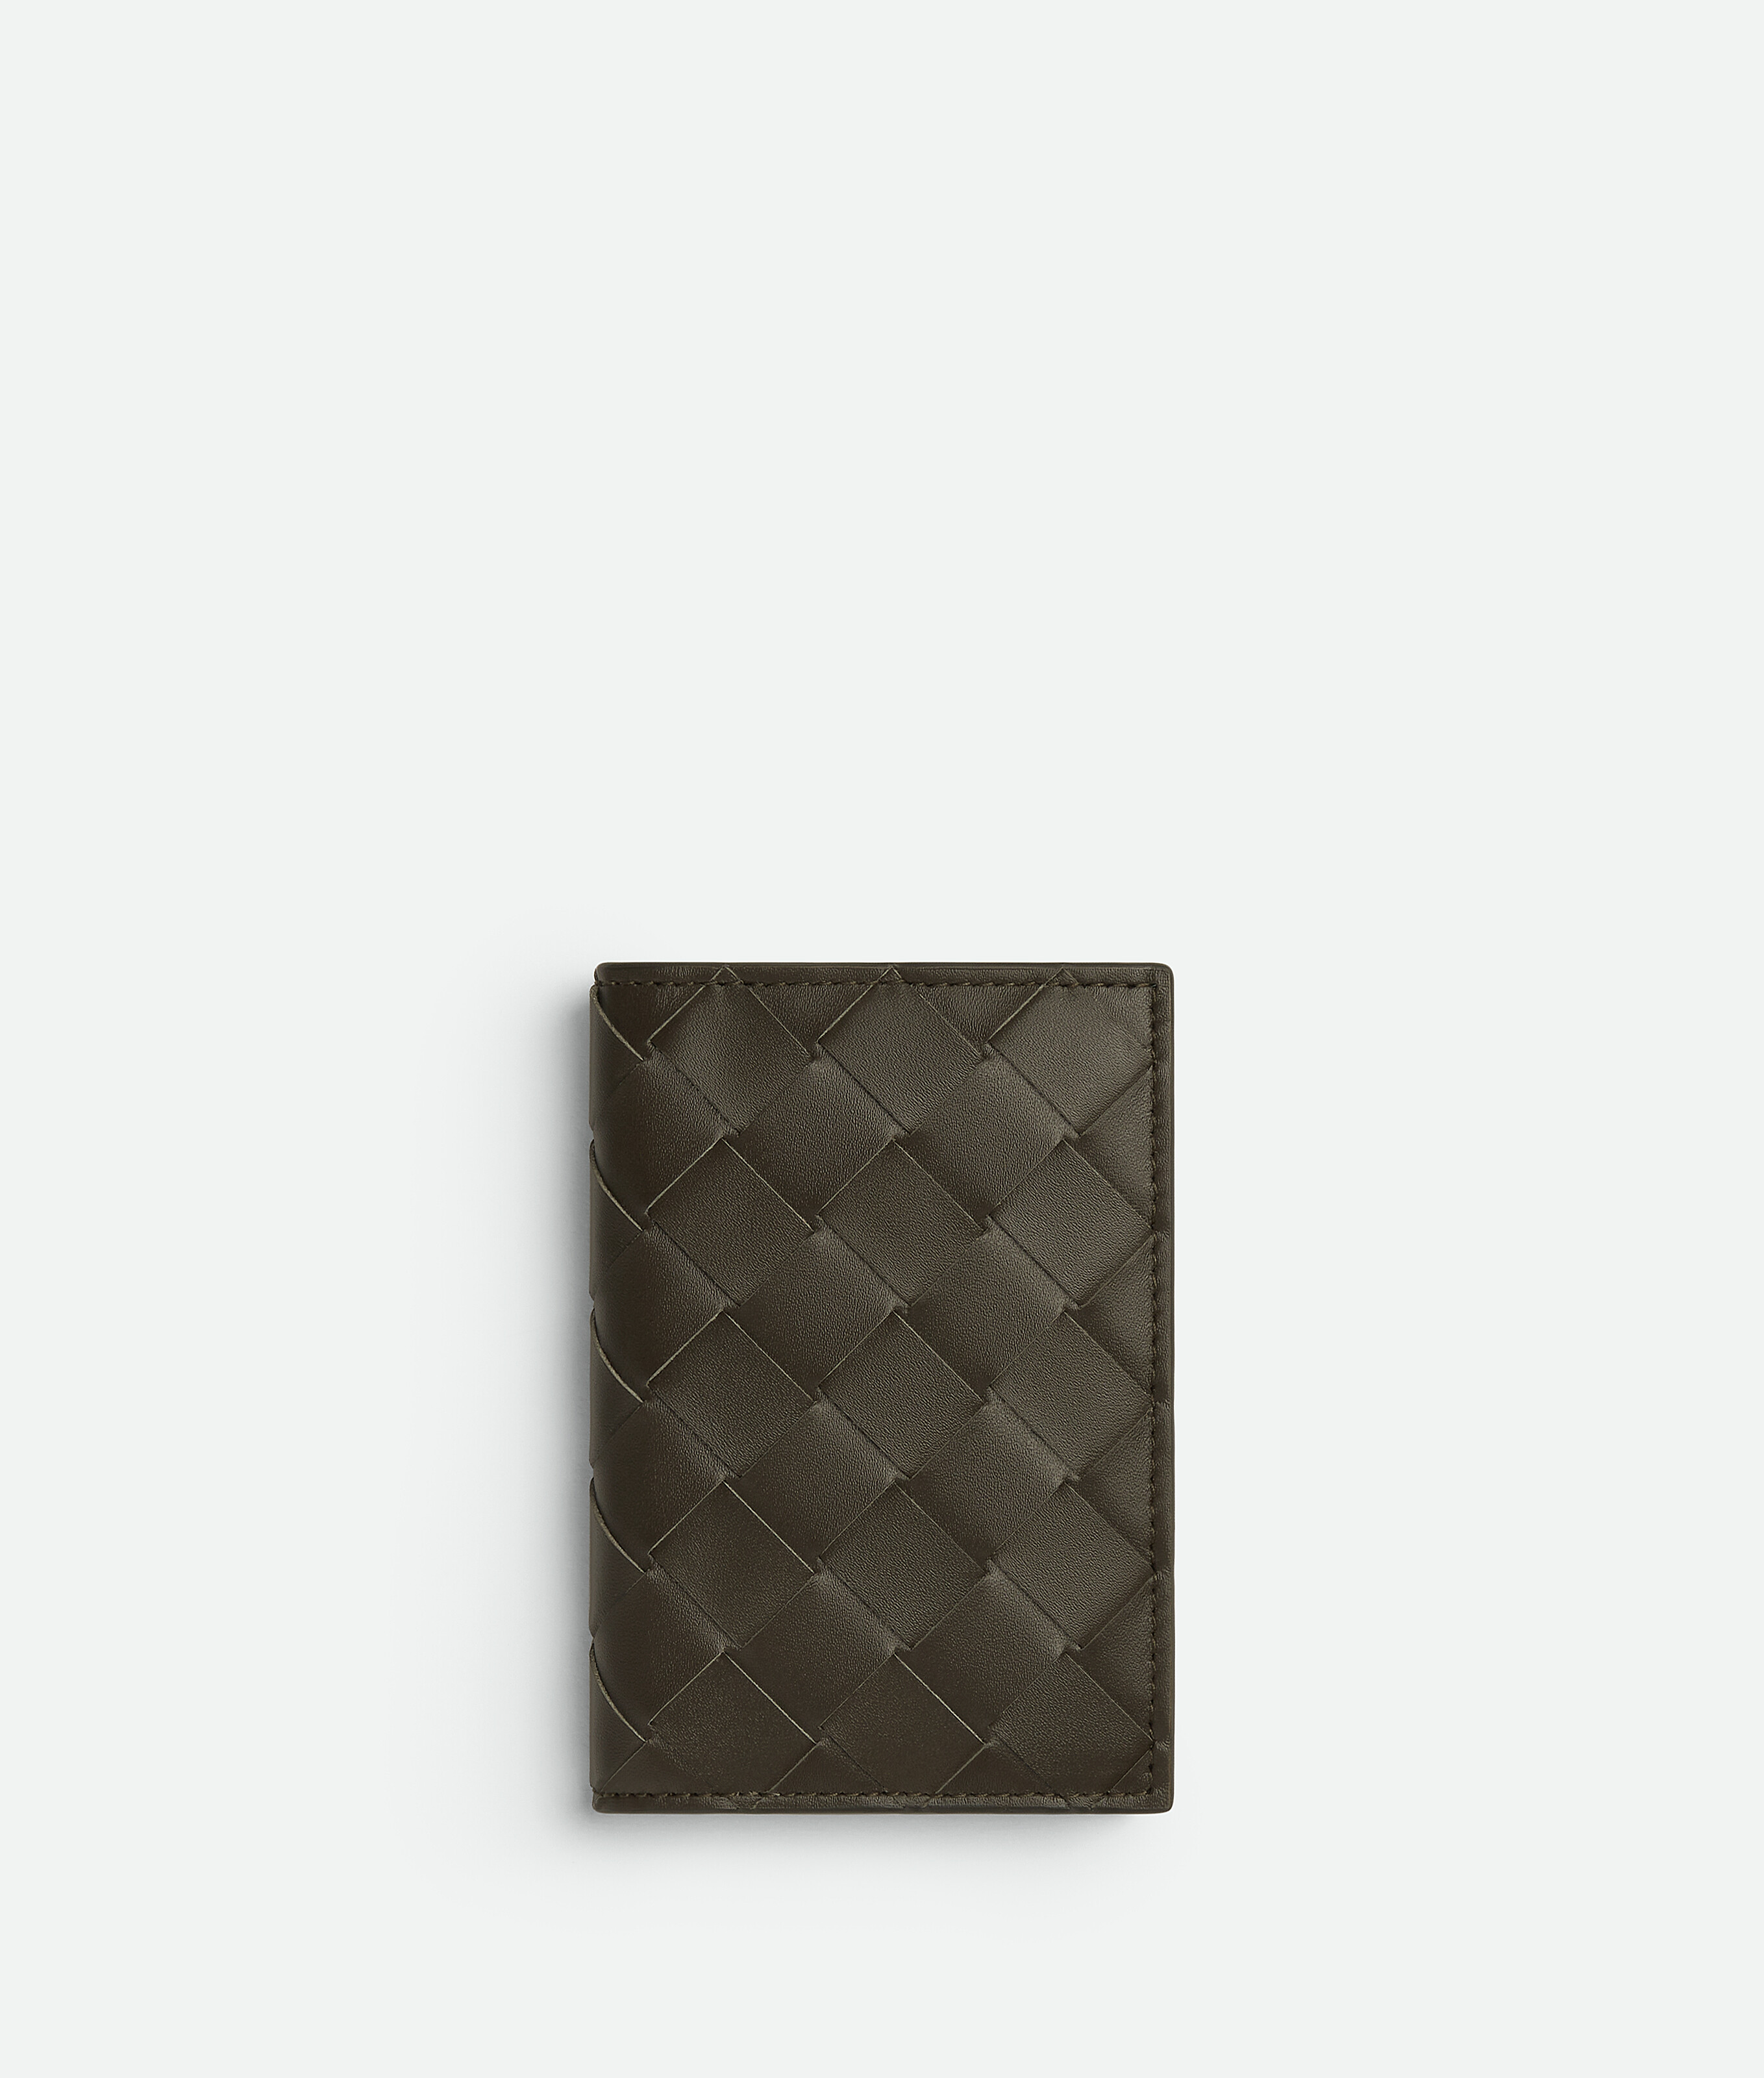 Bottega Veneta Intrecciato Flap Card Case In Kaki/dark Praline